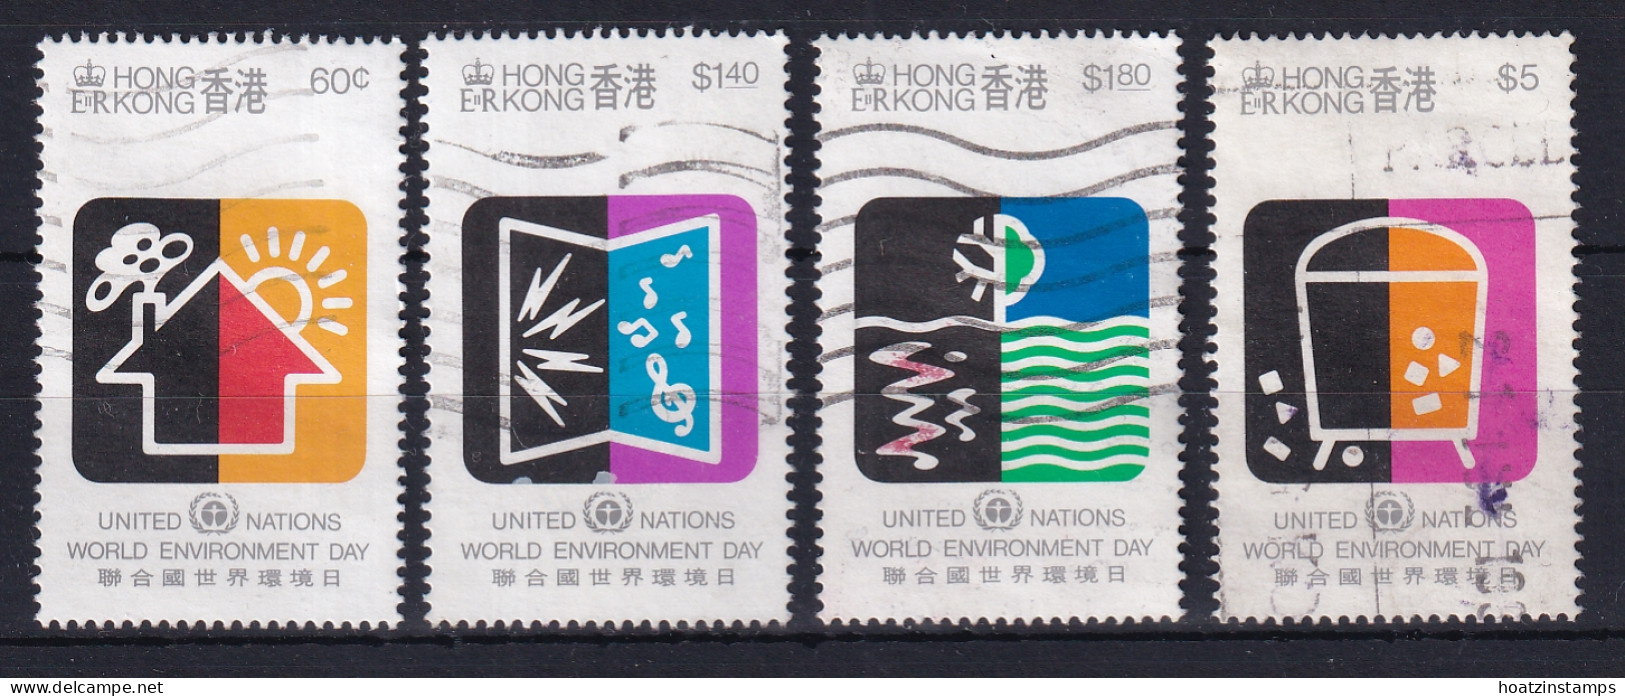 Hong Kong: 1990   U.N. World Environment Day     Used  - Usati